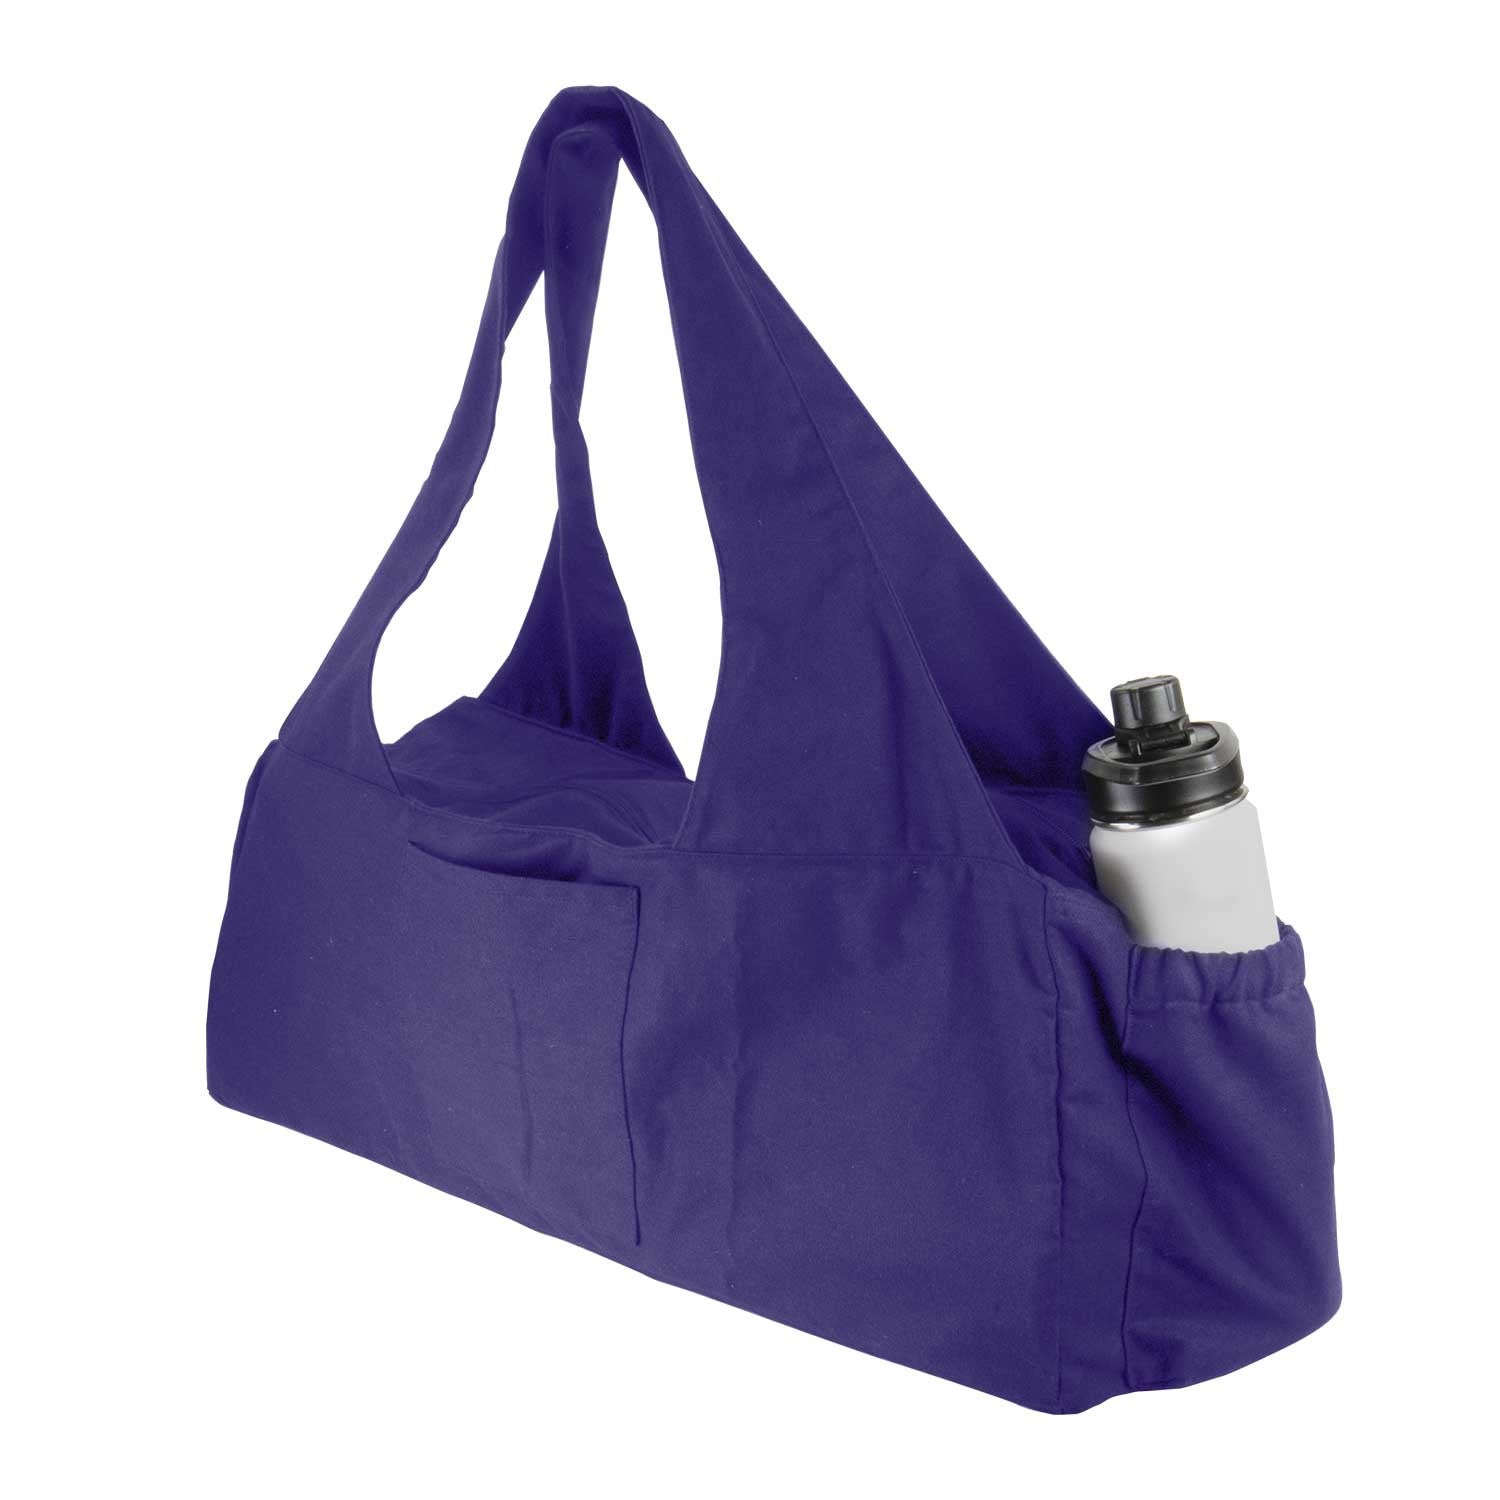 Deluxe Kit Bag With Bottle Holder